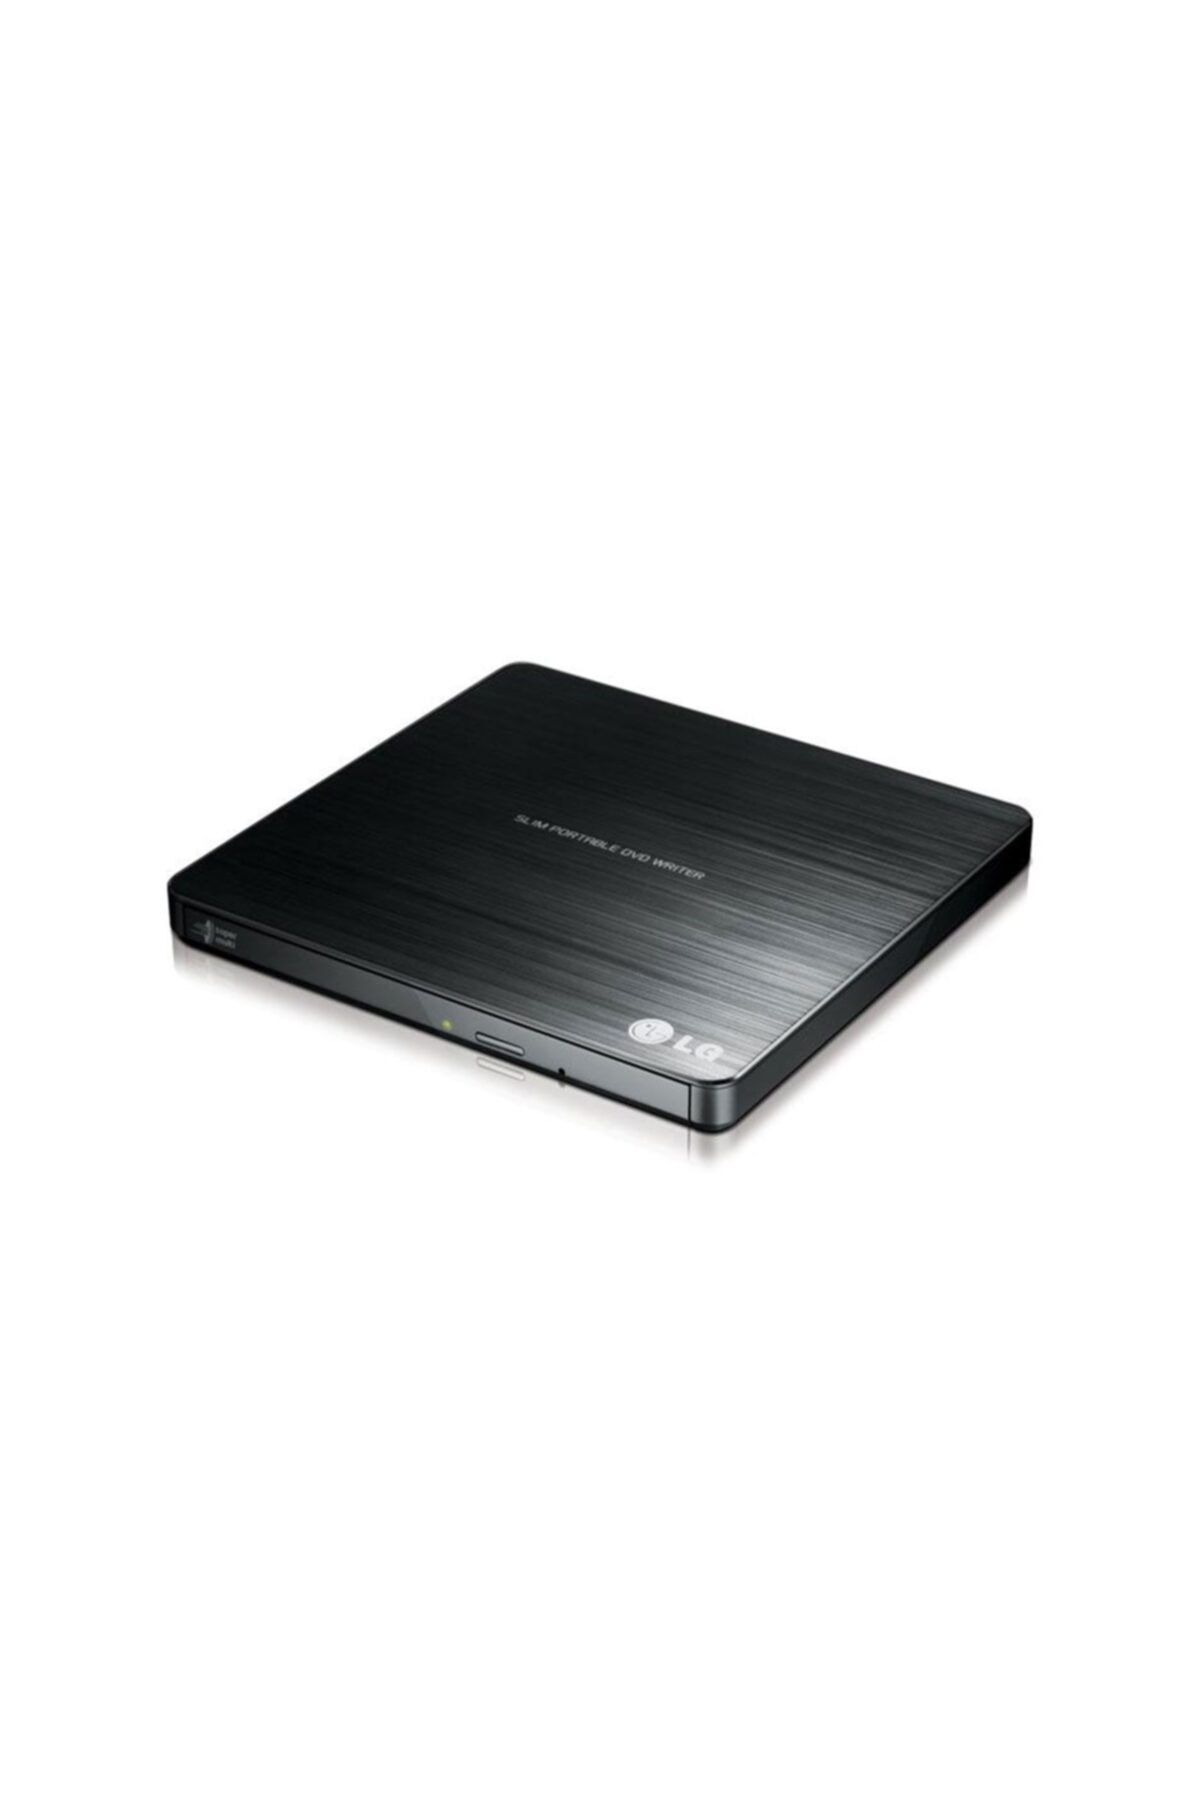 LG Gp60nb50 Harici Sata Dvd-rw,slım,usb,siyah